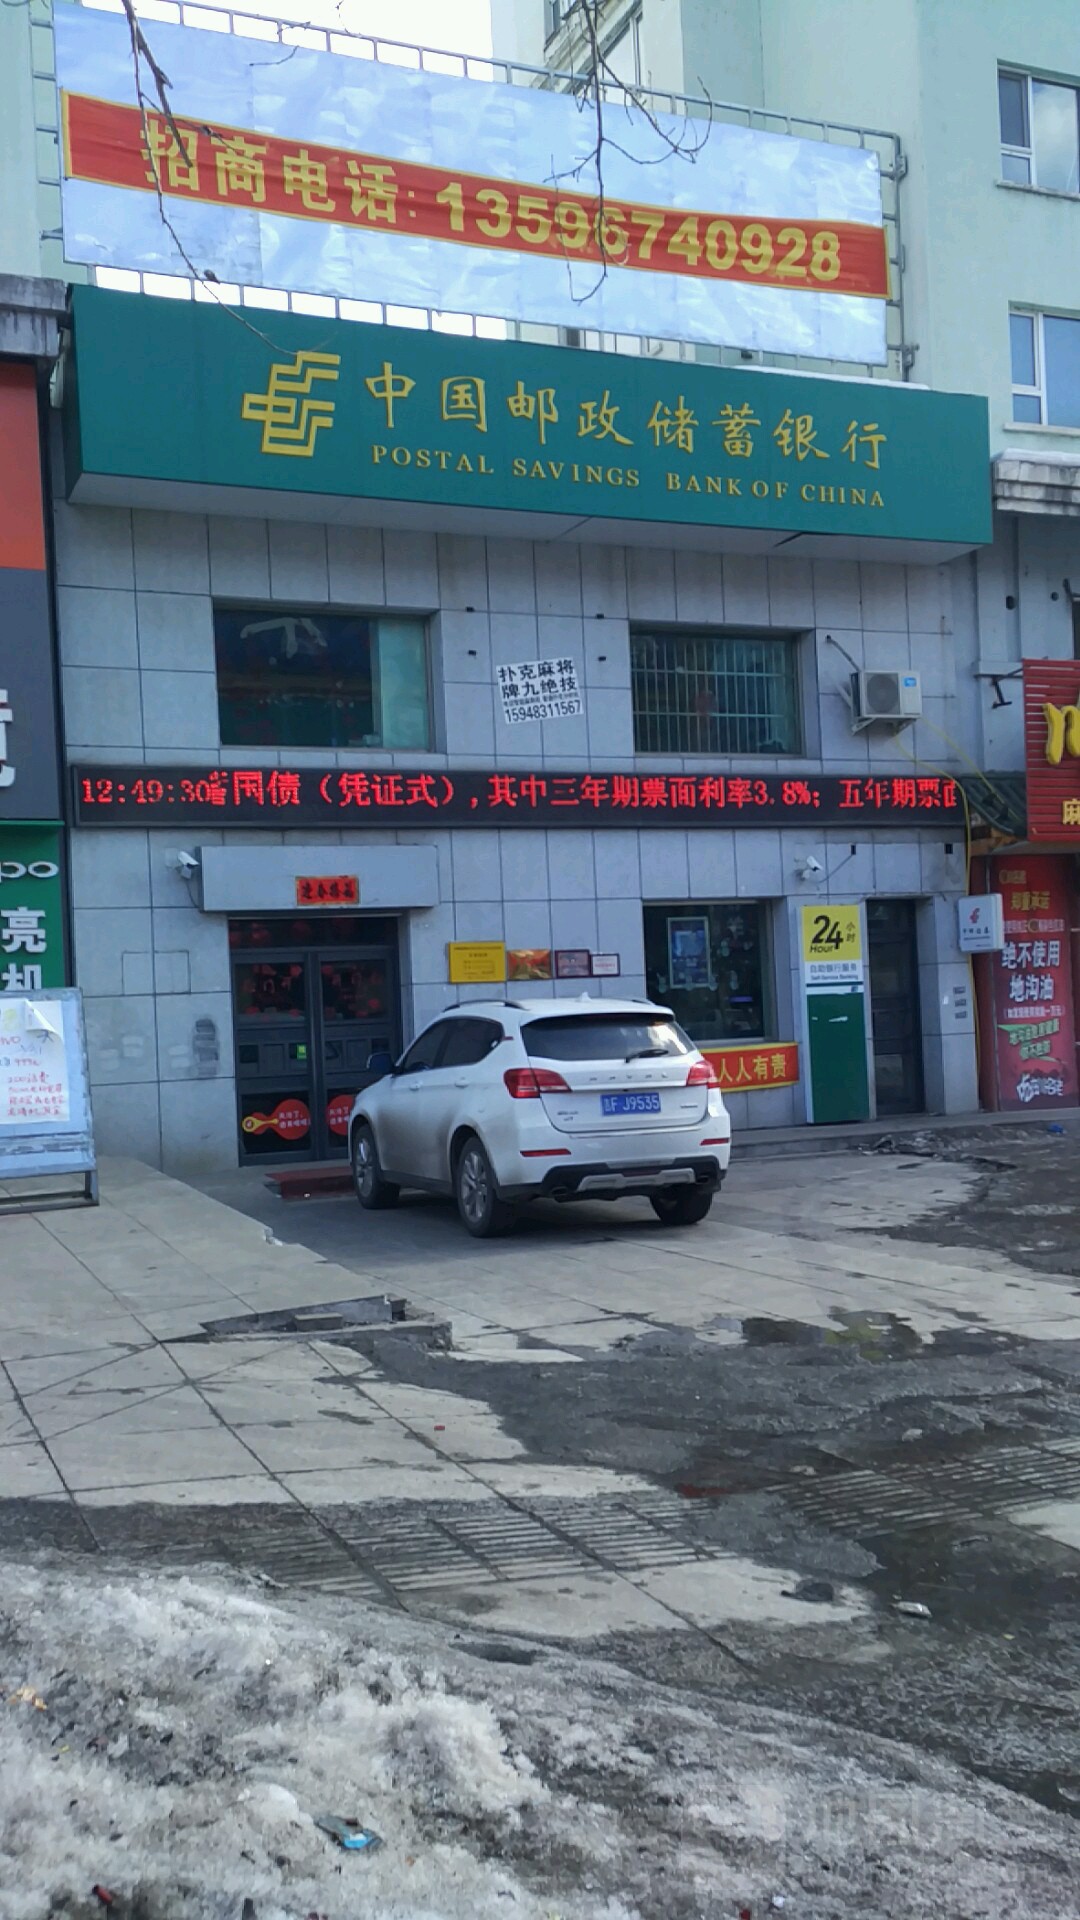 中國郵政儲蓄銀行(昌泰營業所)